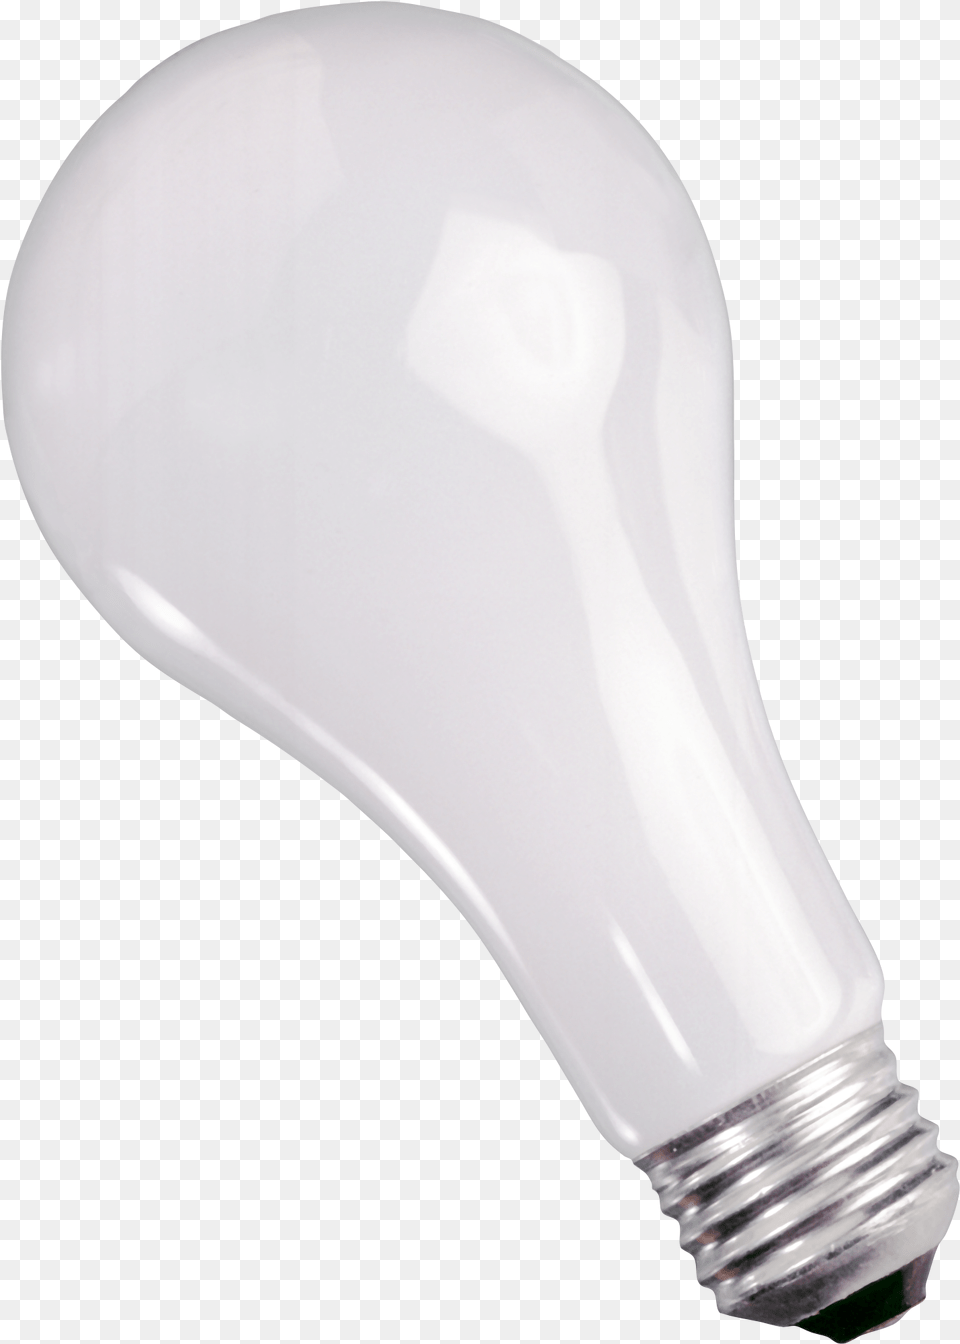 Download Lamp For Lamp, Light, Lightbulb Png Image